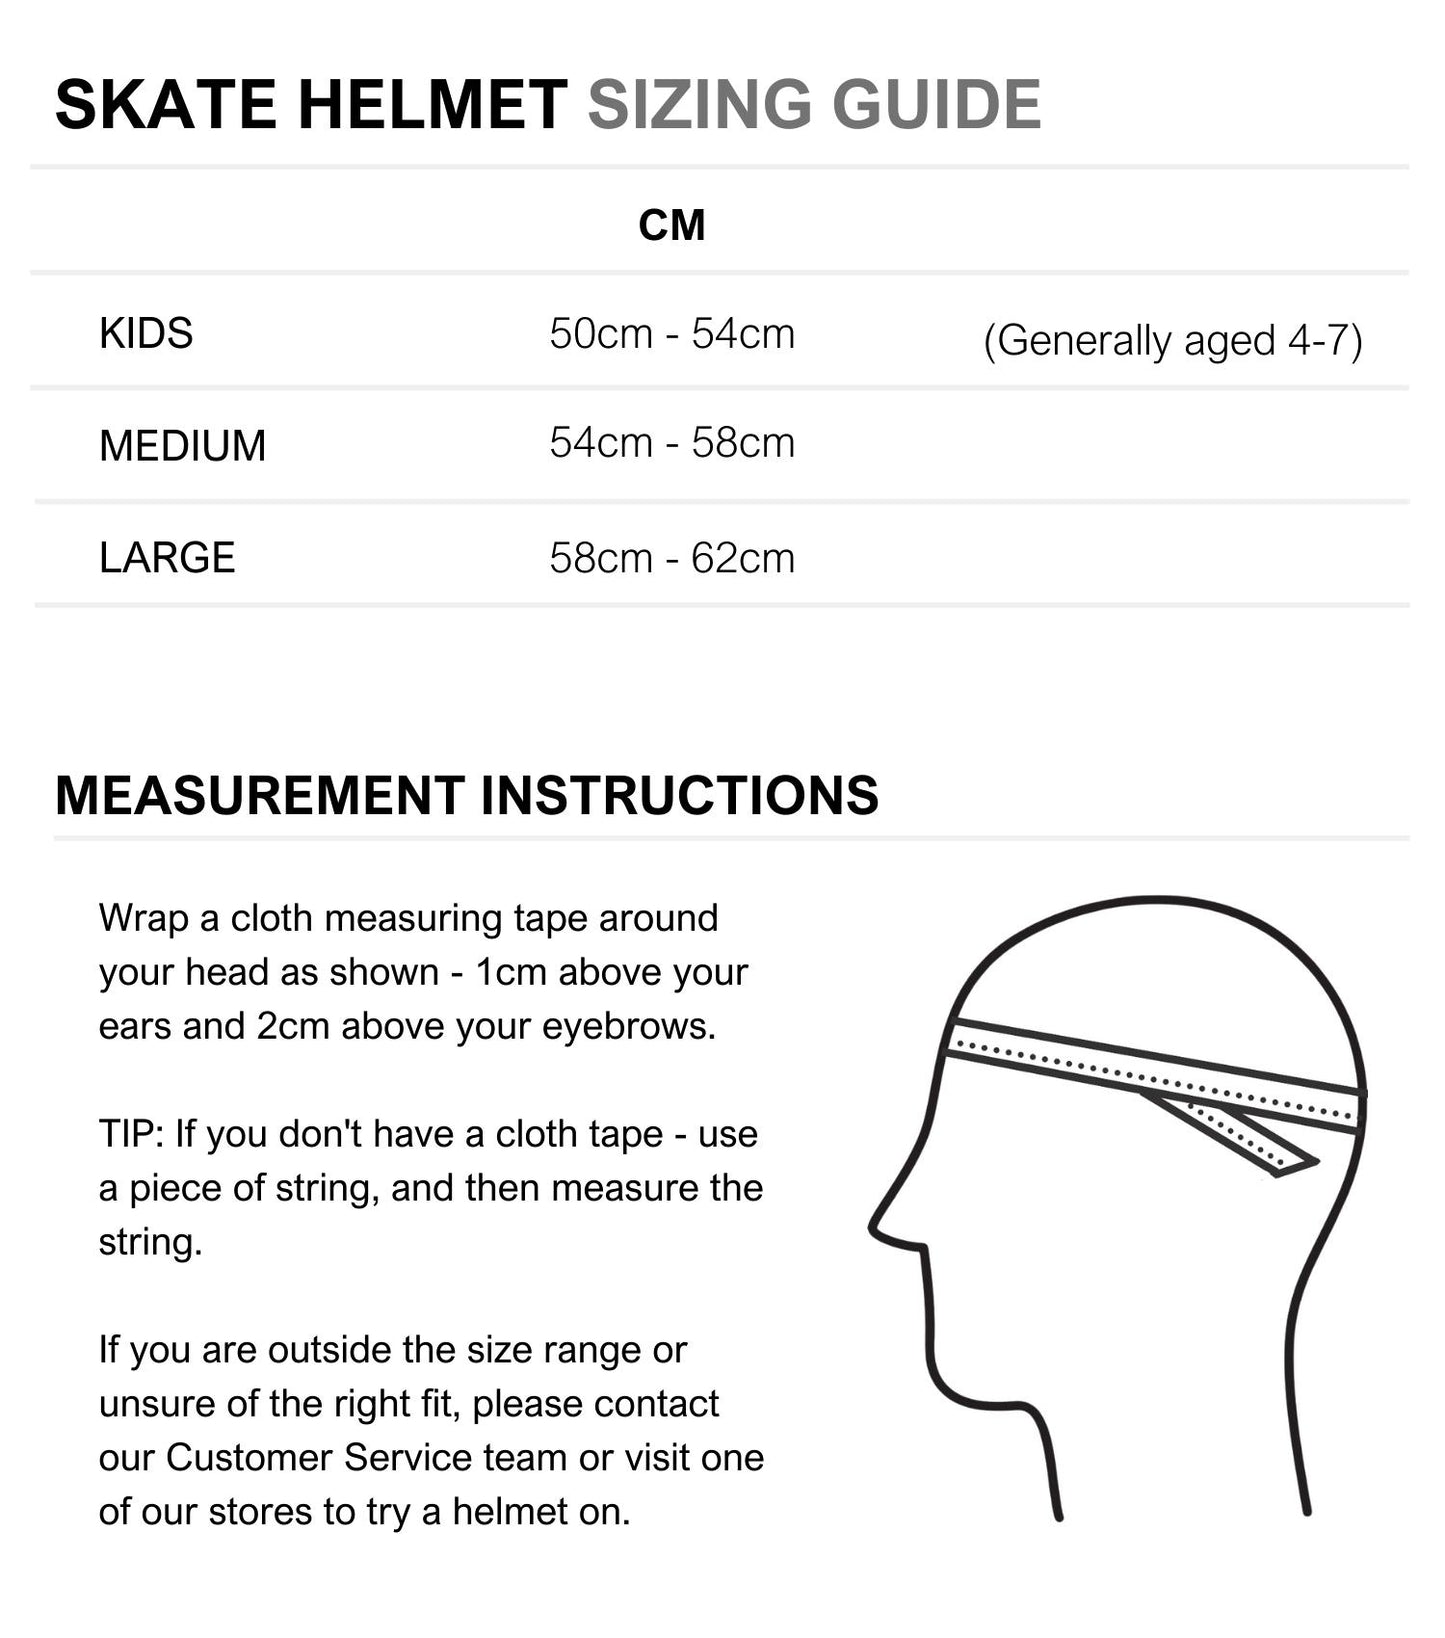 Classic Skate Bike Helmet Lavender